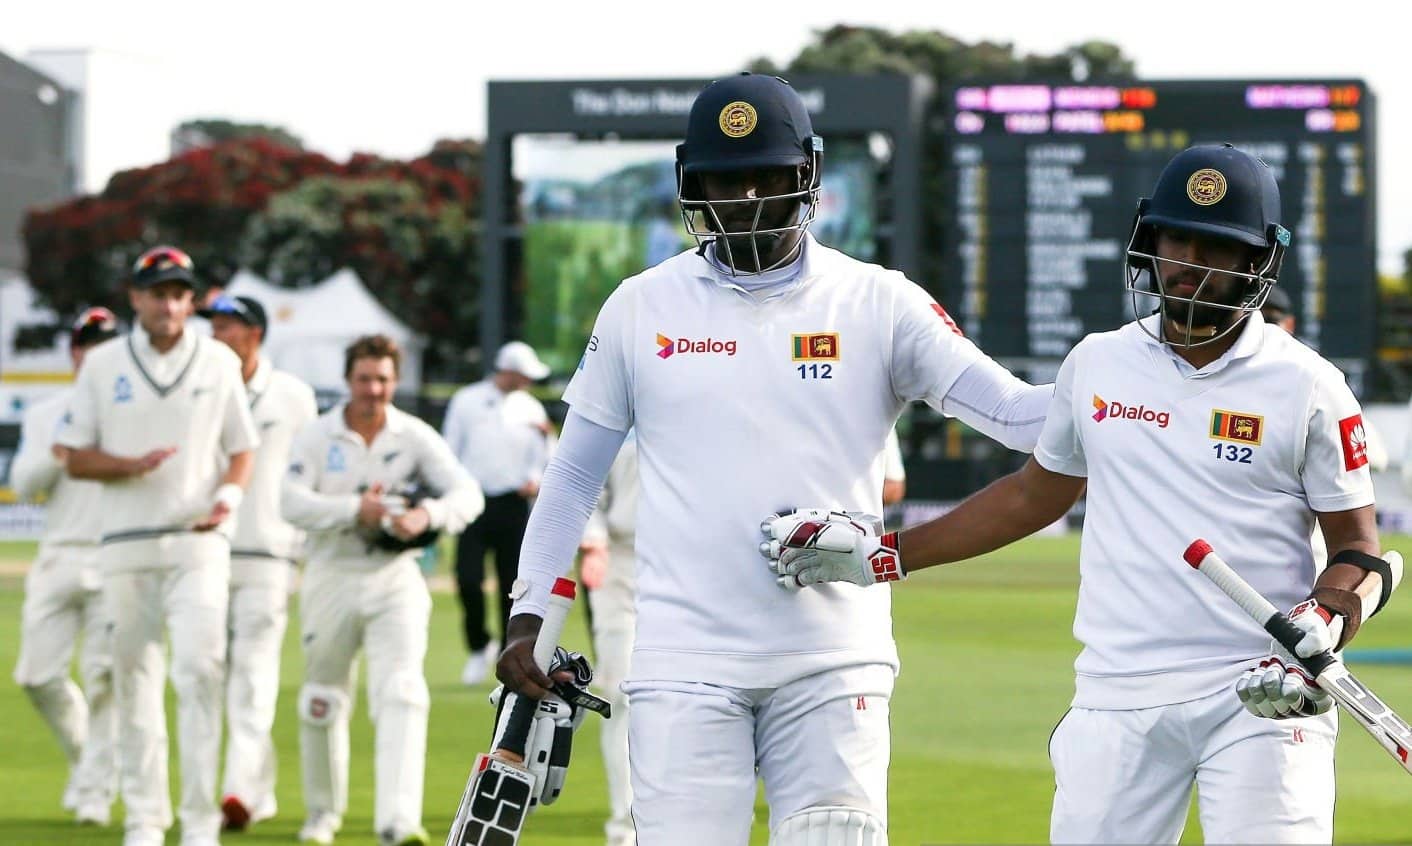 Mathews Brings in Gritty Century as Sri Lanka believe in WTC Final Dream